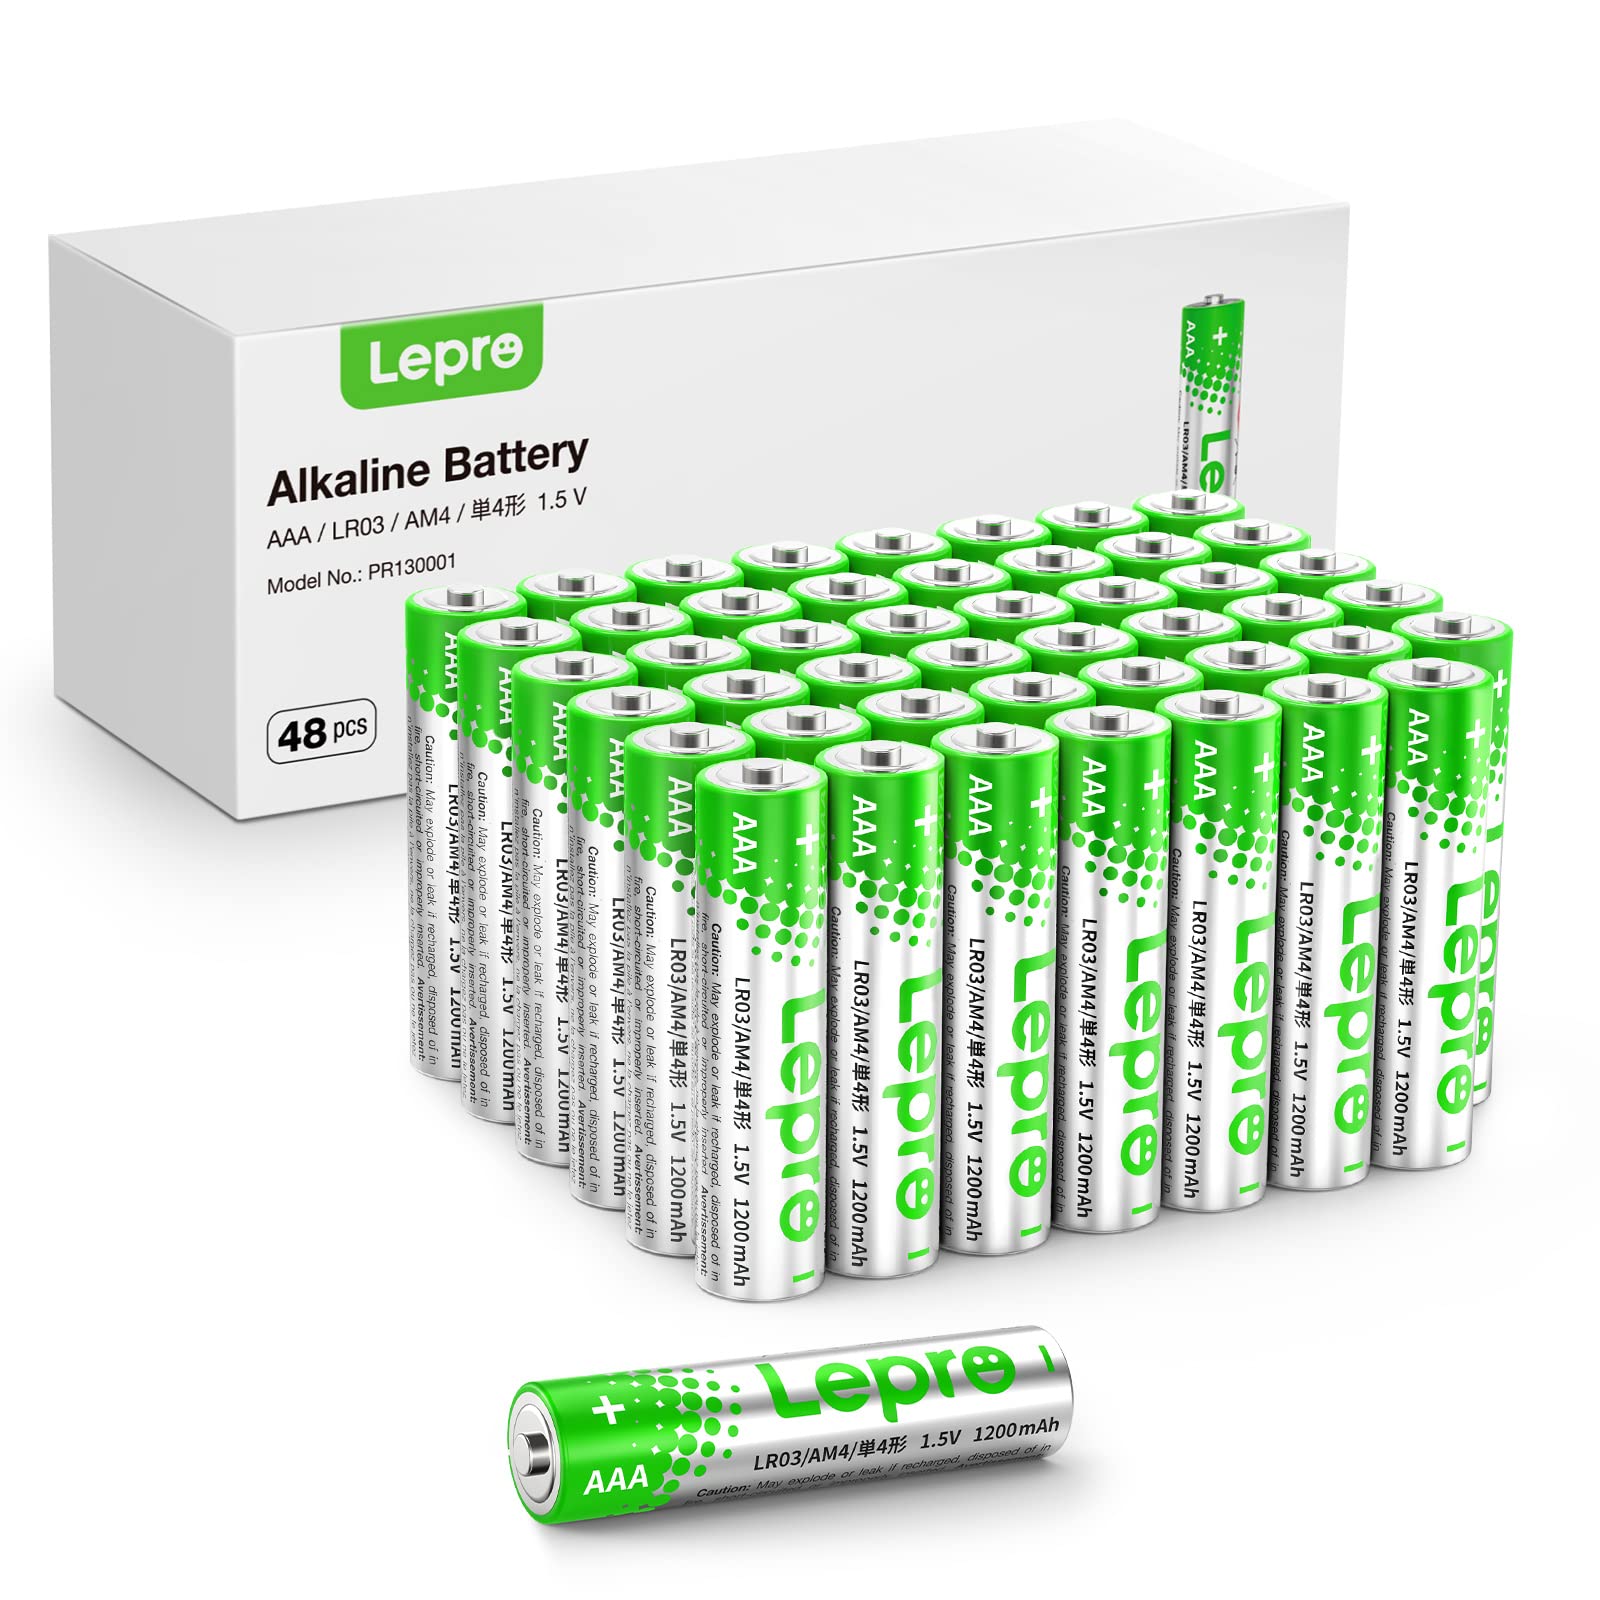 Exclusif Lepro Piles Alcalines AAA - Lot de 48-1,5V LR03 Piles AAA -1200mAh - Batteries AAA pour Le Quotidien, Ultra Alcalines Piles Anti-Fuite, Anti-Corrosion Idéale pour Jouet, Réveil, Télécommande p0qeycPIu en solde